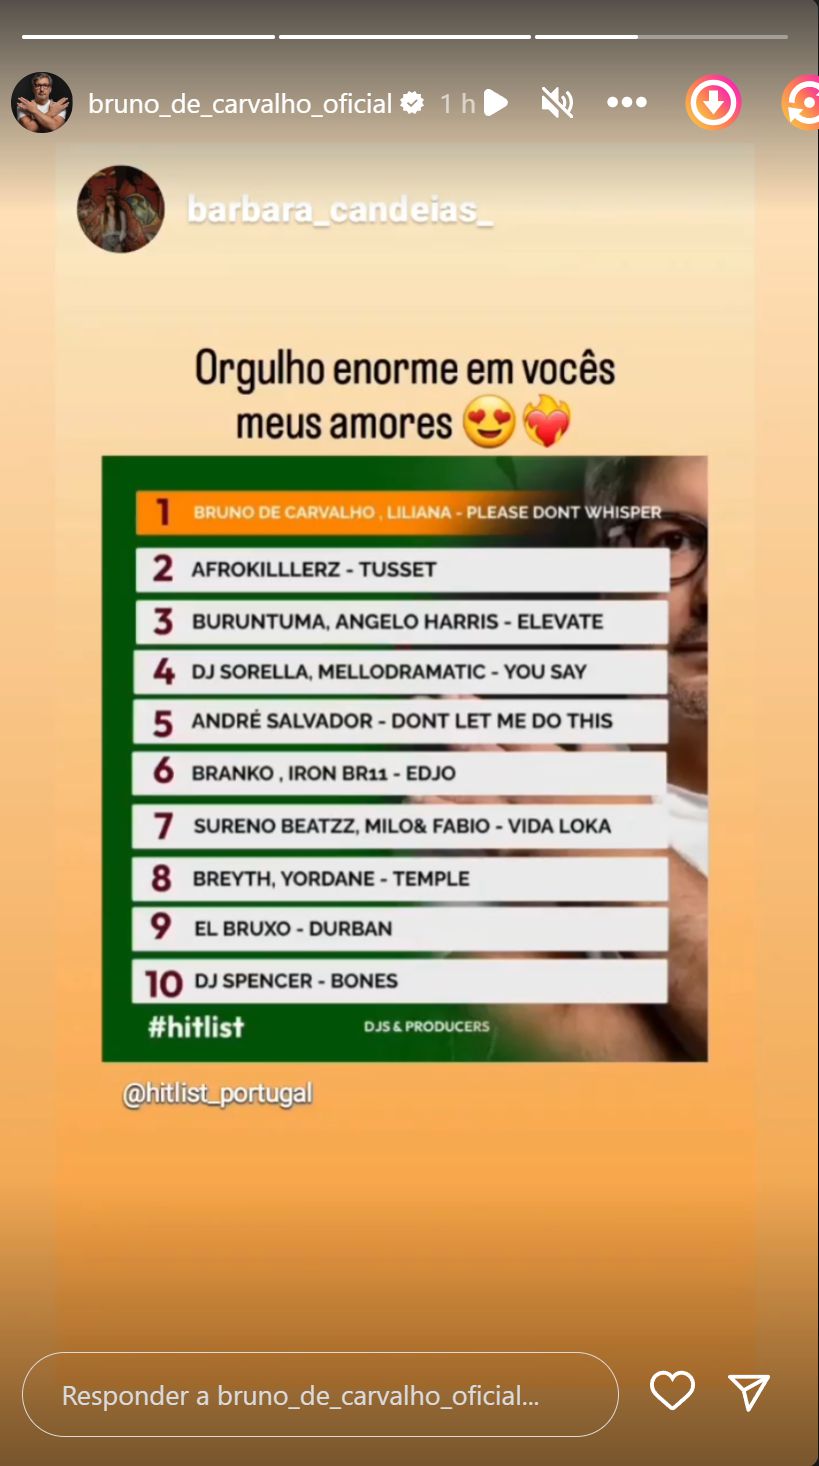 Bruno de Carvalho e Liliana Almeida assinalam (nova) conquista: &#8220;Orgulho enorme em vocês meus amores&#8230;&#8221;